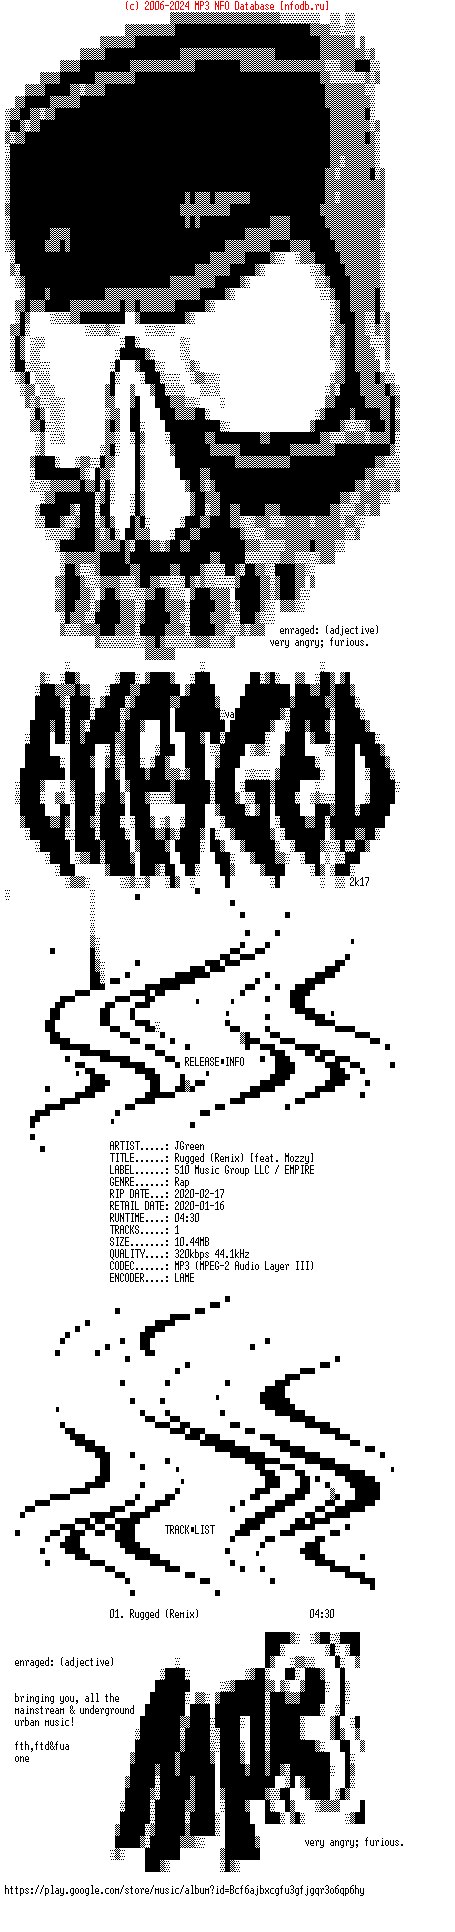 Jgreen-Rugged_(REMIX)_(FEAT_MOZZY)-Single-WEB-2020